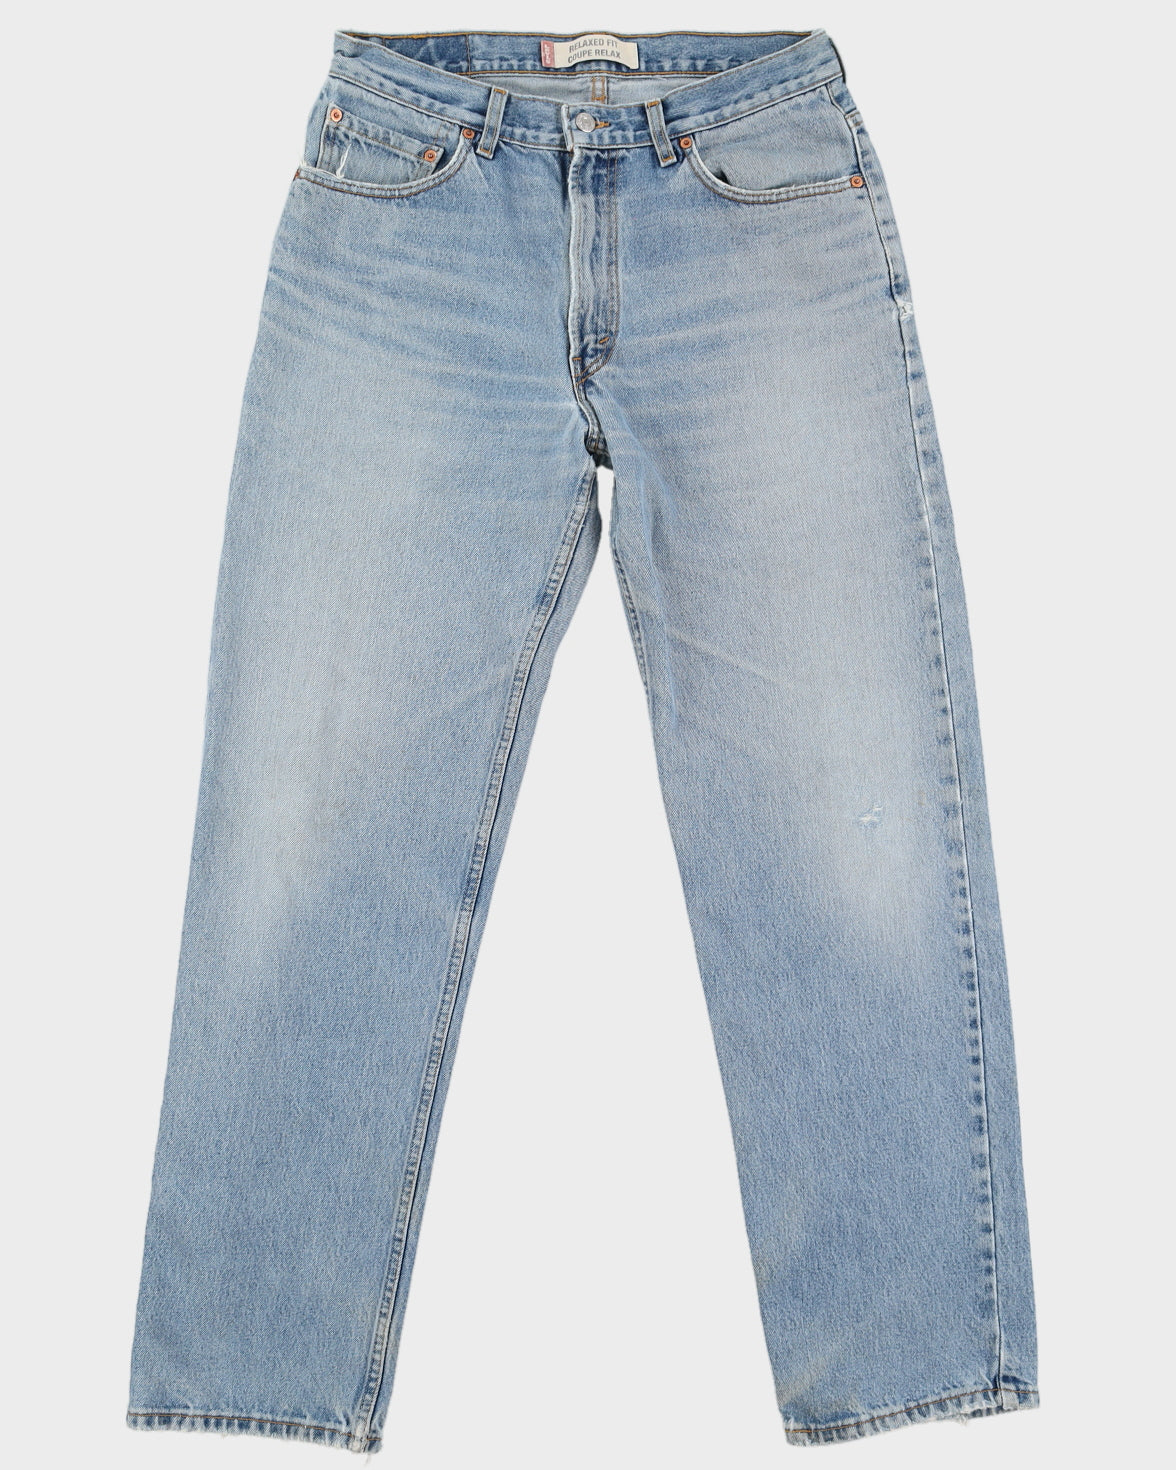 Vintage Levi's Light Wash 505 Denim Jeans - W34 L34